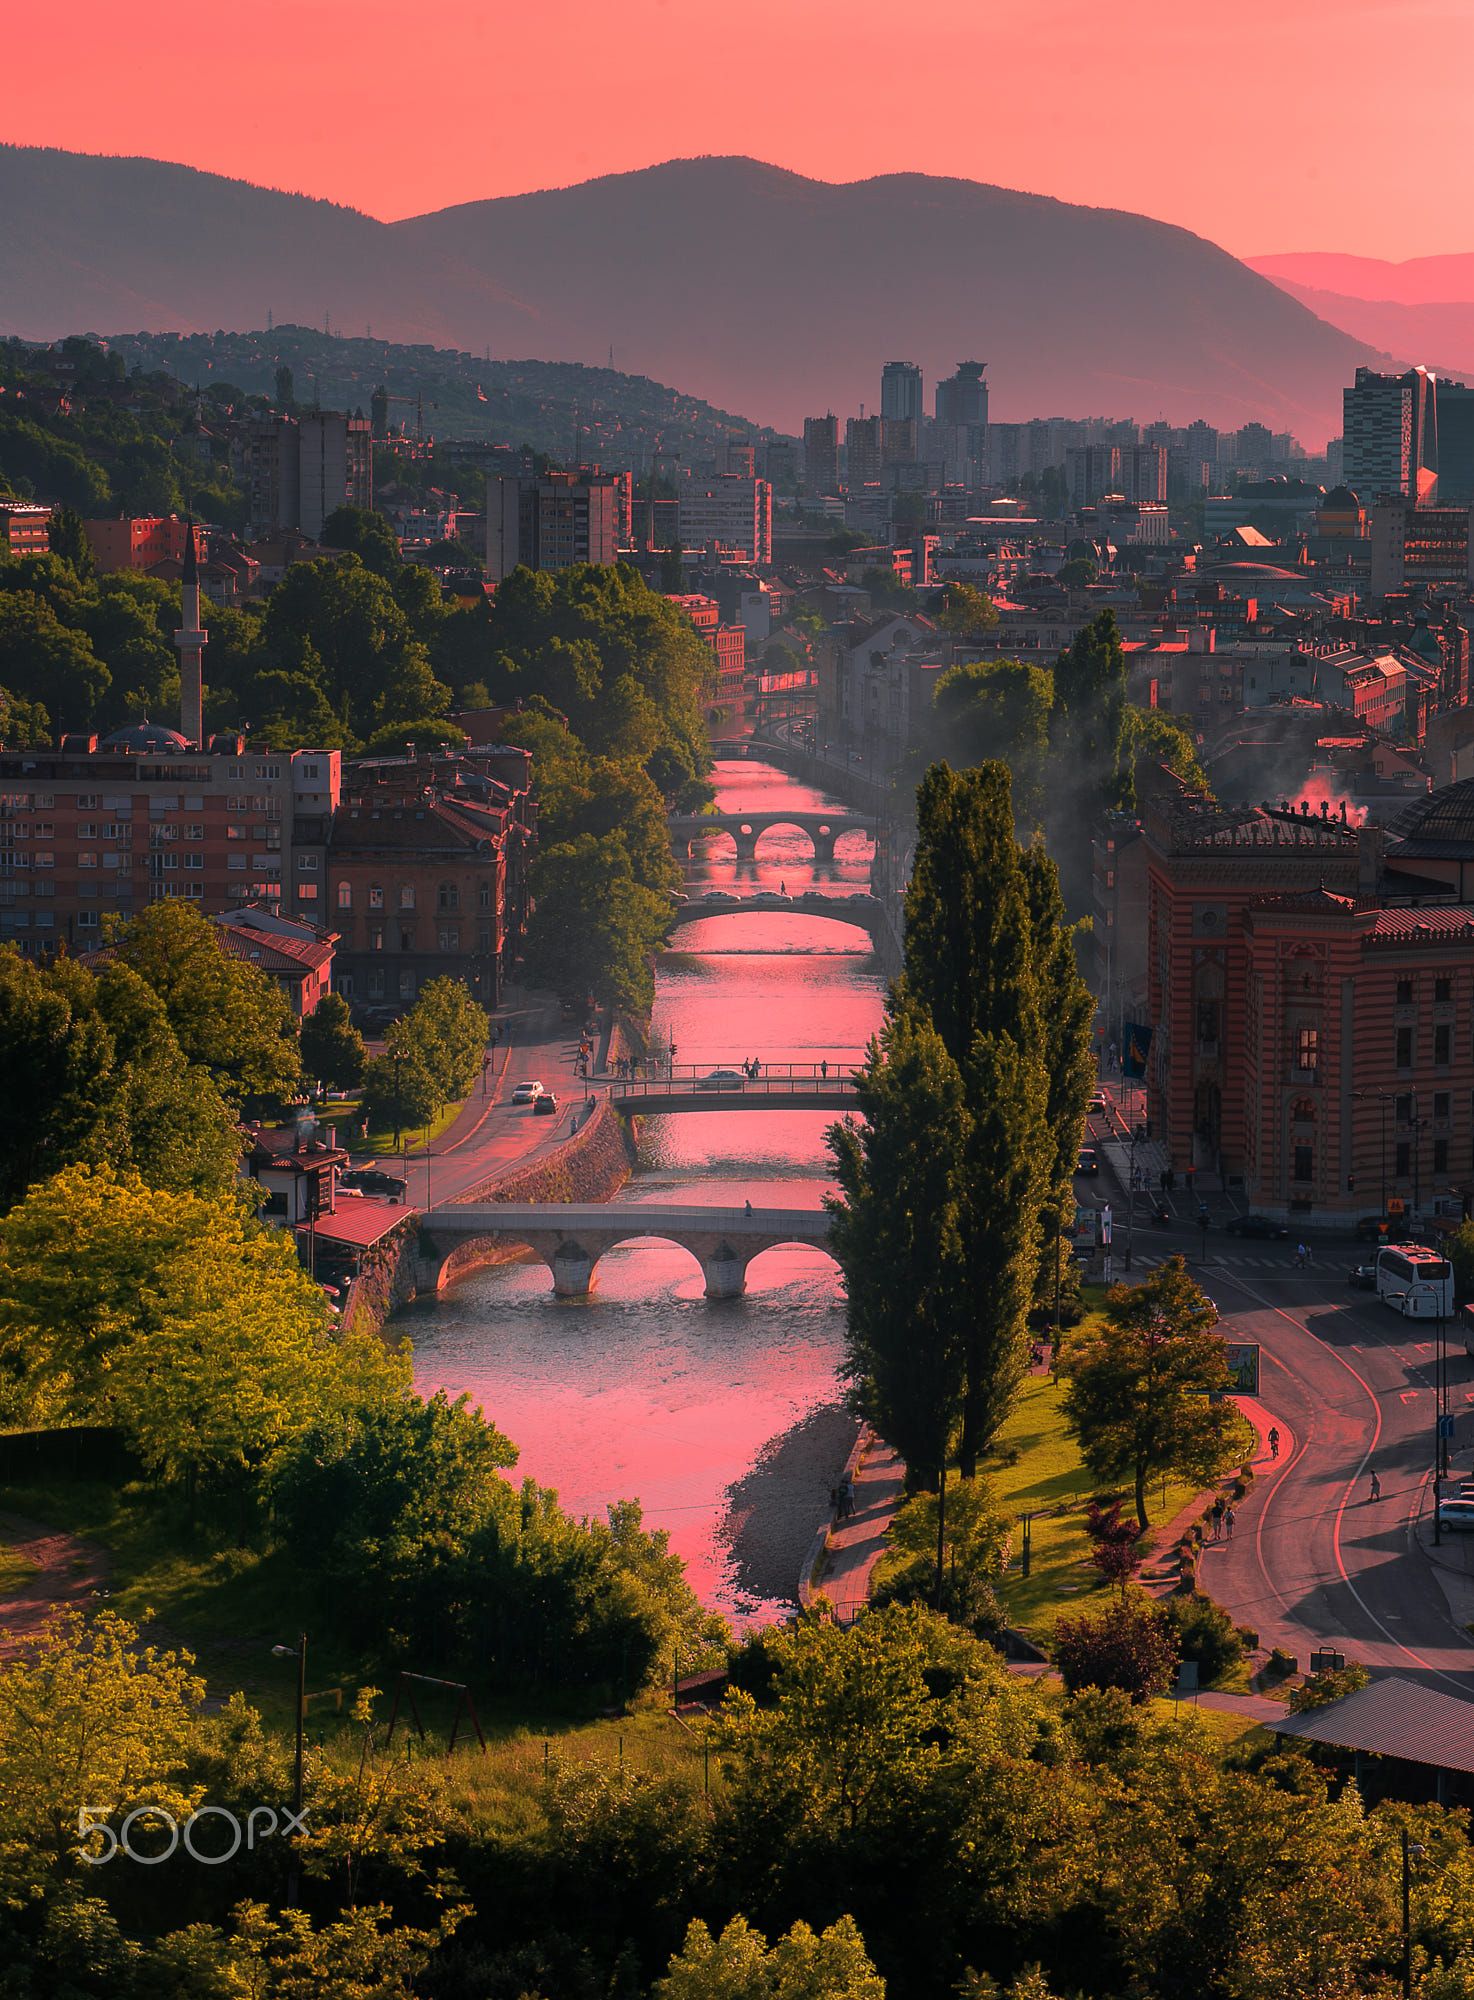 Miljacka river, Sarajevo, Bosnia | DÜNYADAN MANZARALAR | Pinterest ...